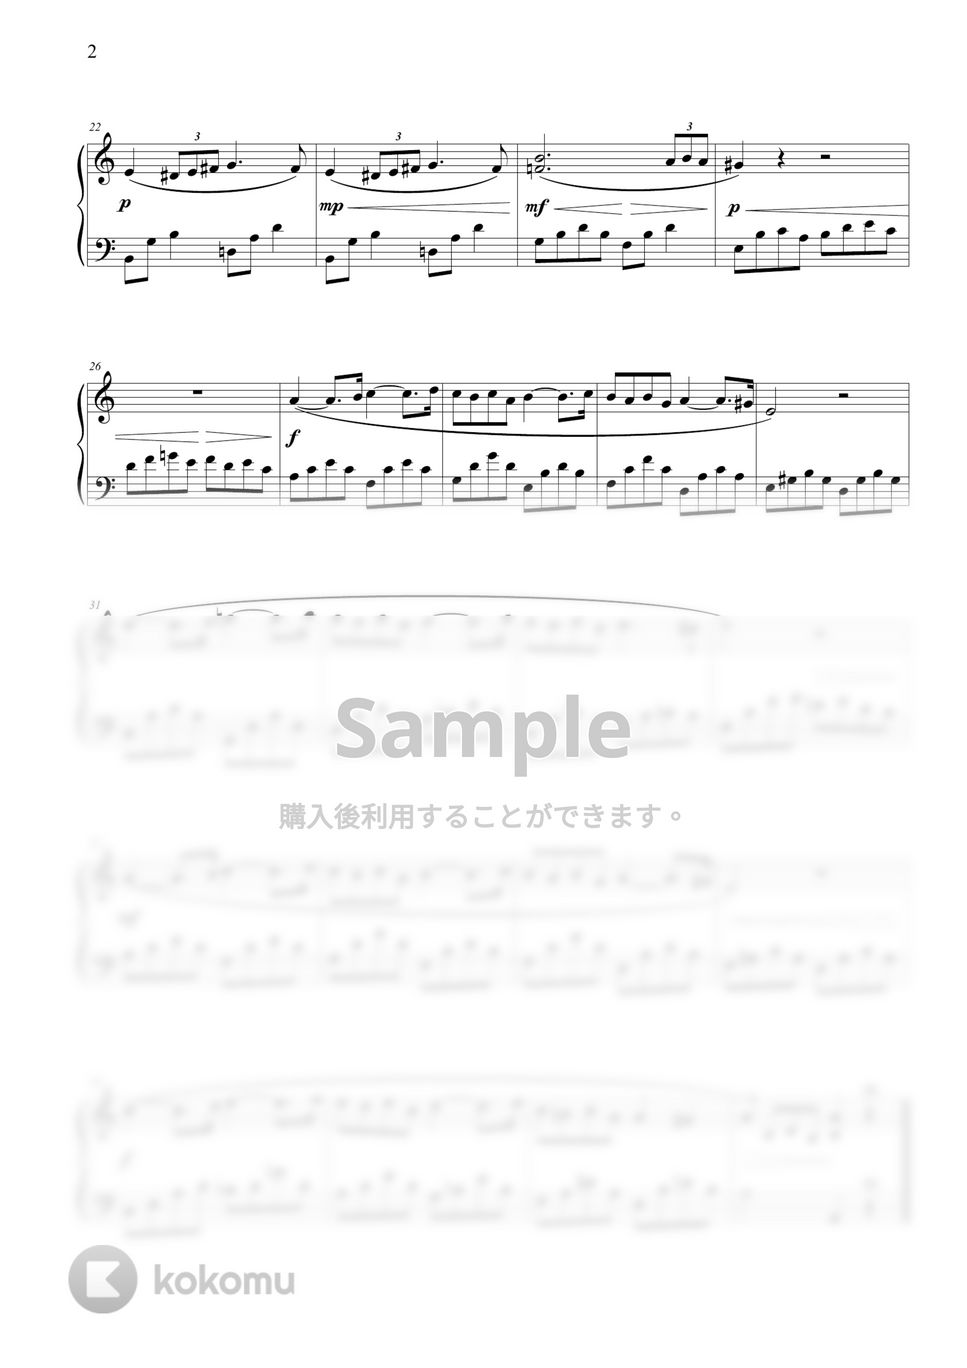 ガブリエル・フォーレ (G. Fauré) - パヴァーヌ (初級バージョン) by THIS IS PIANO